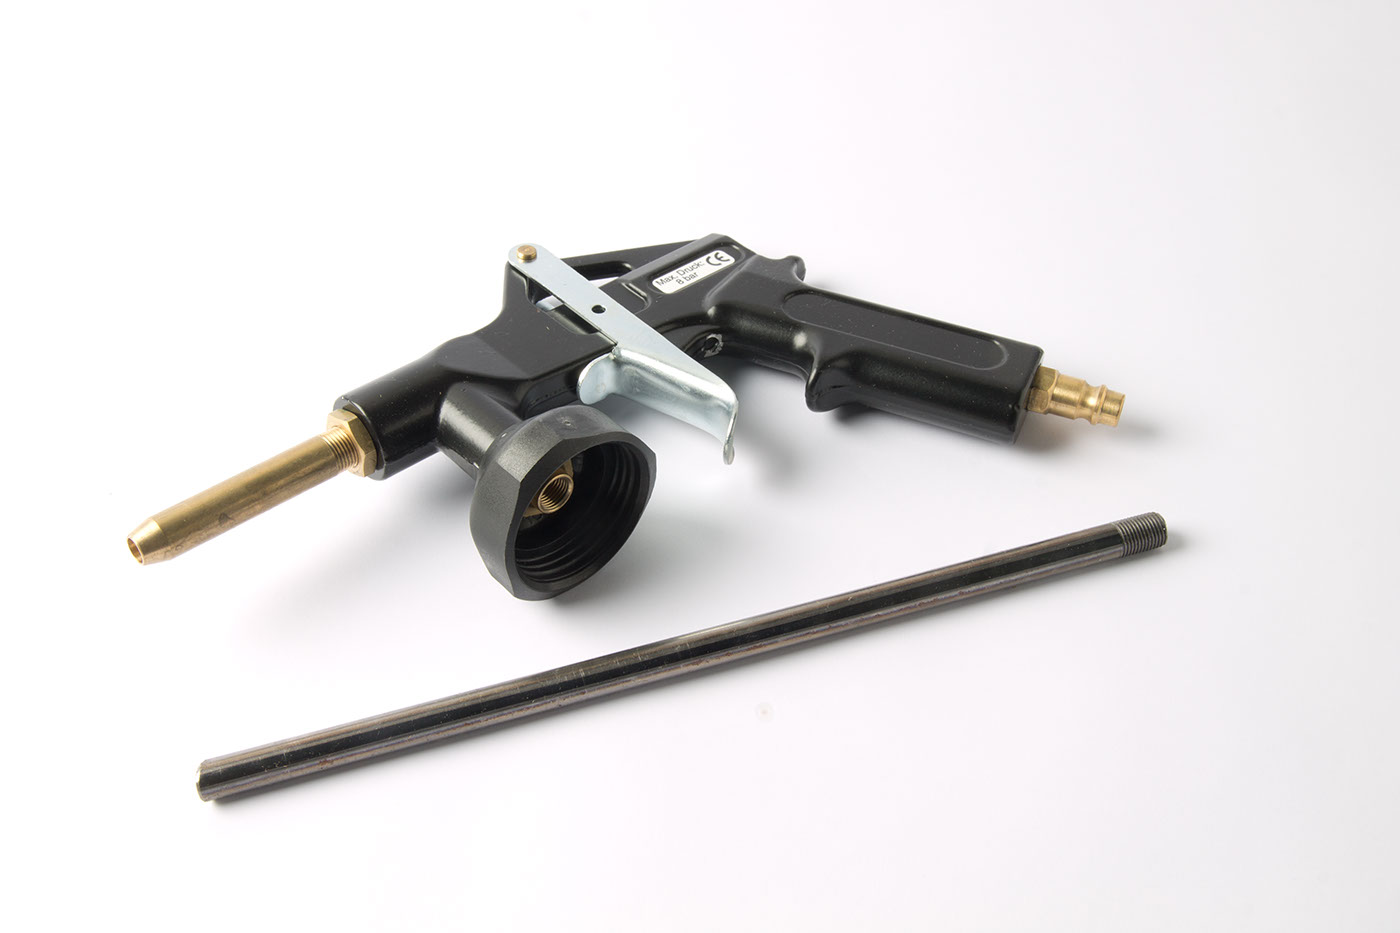 Unterbodenschutzpistole
Spraygun for underbody coating
Pistole